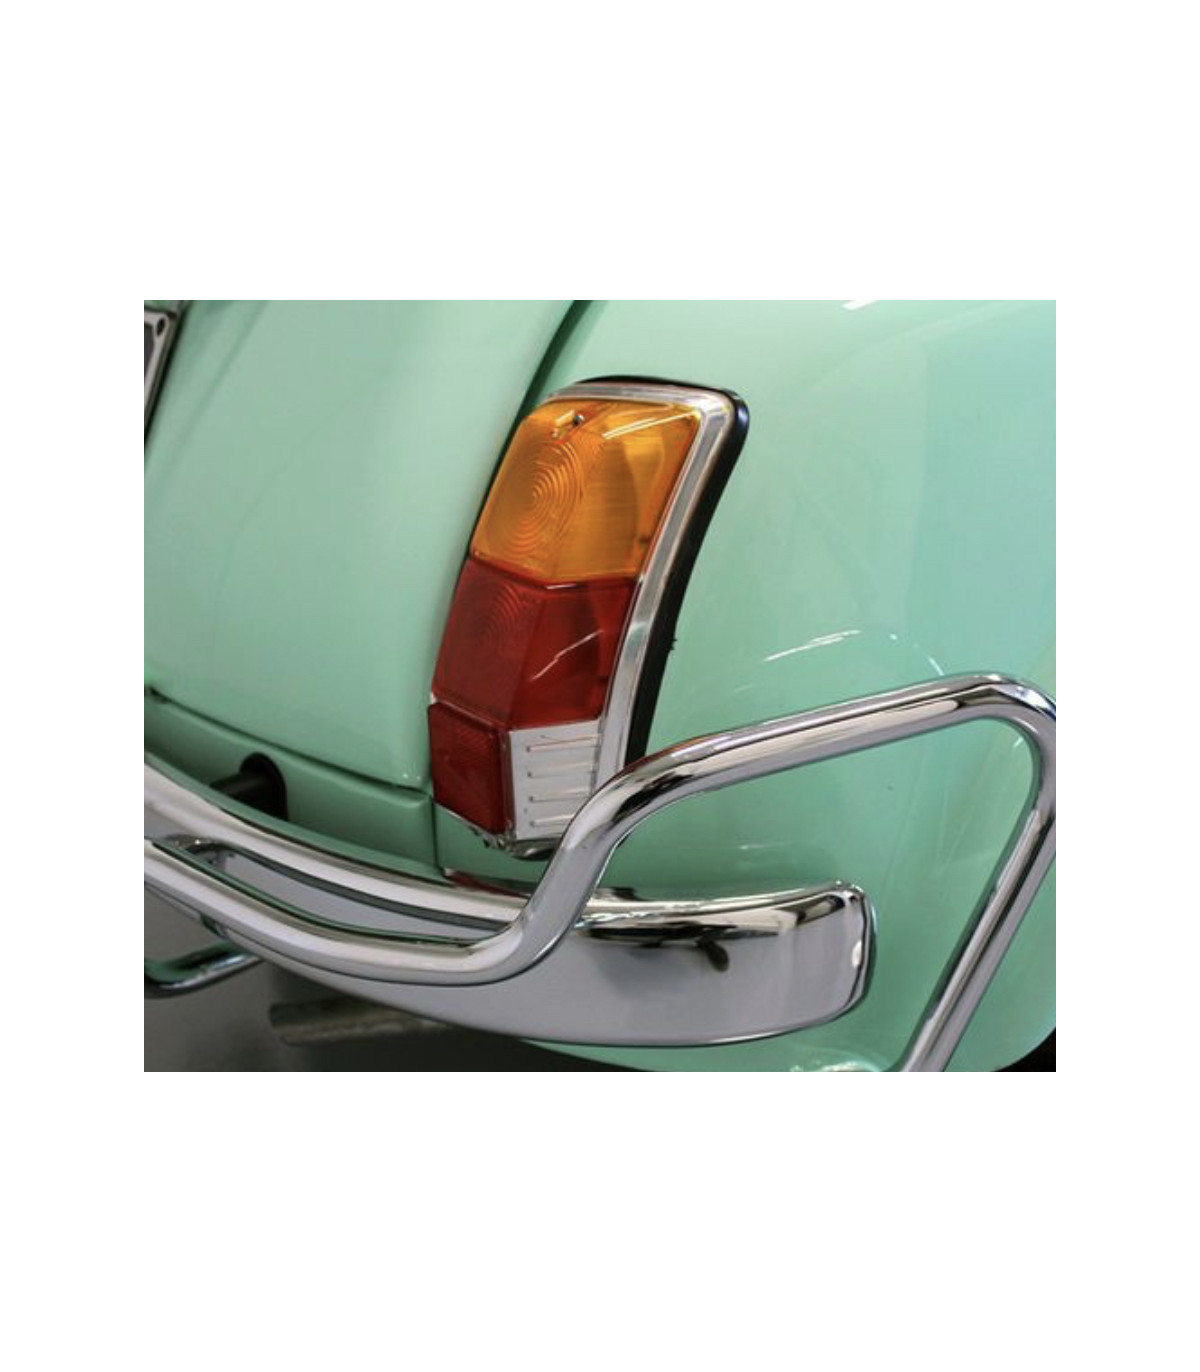 Fiat 500 - Changement ampoule feux arrière (feu stop) 